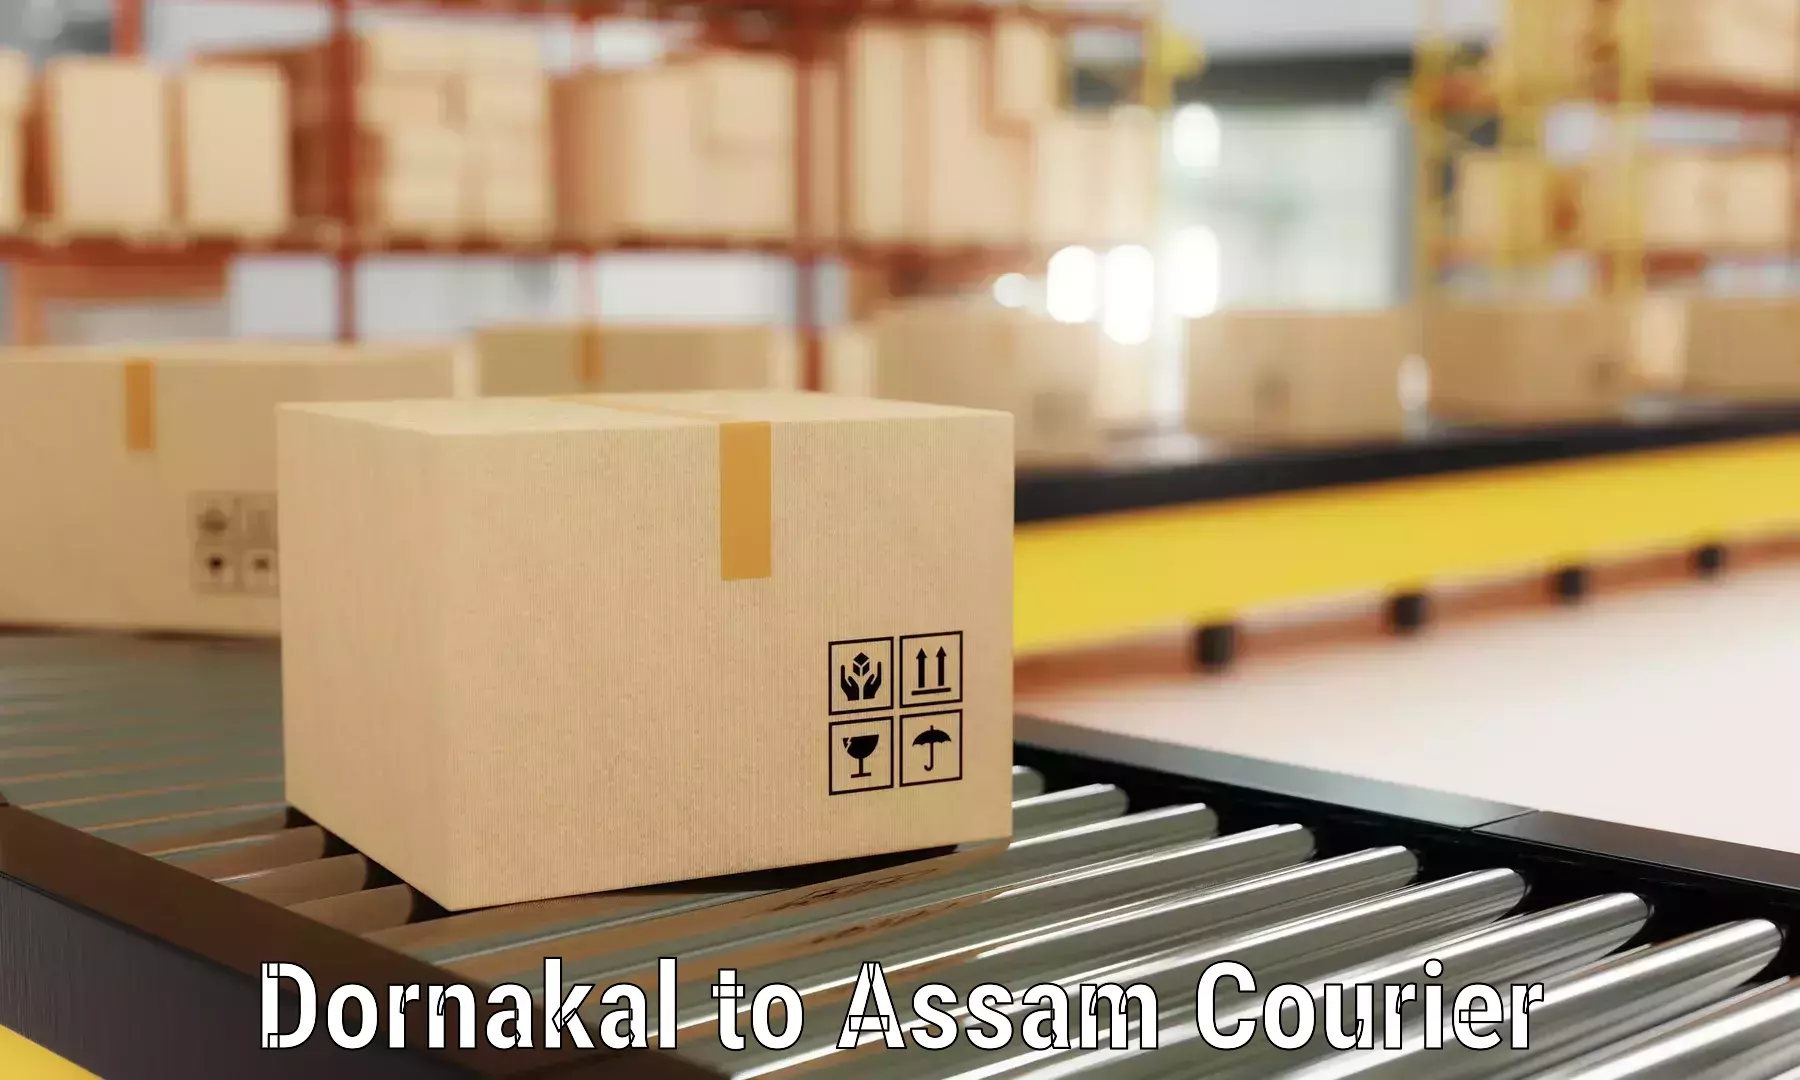 Full-service movers Dornakal to Lala Assam